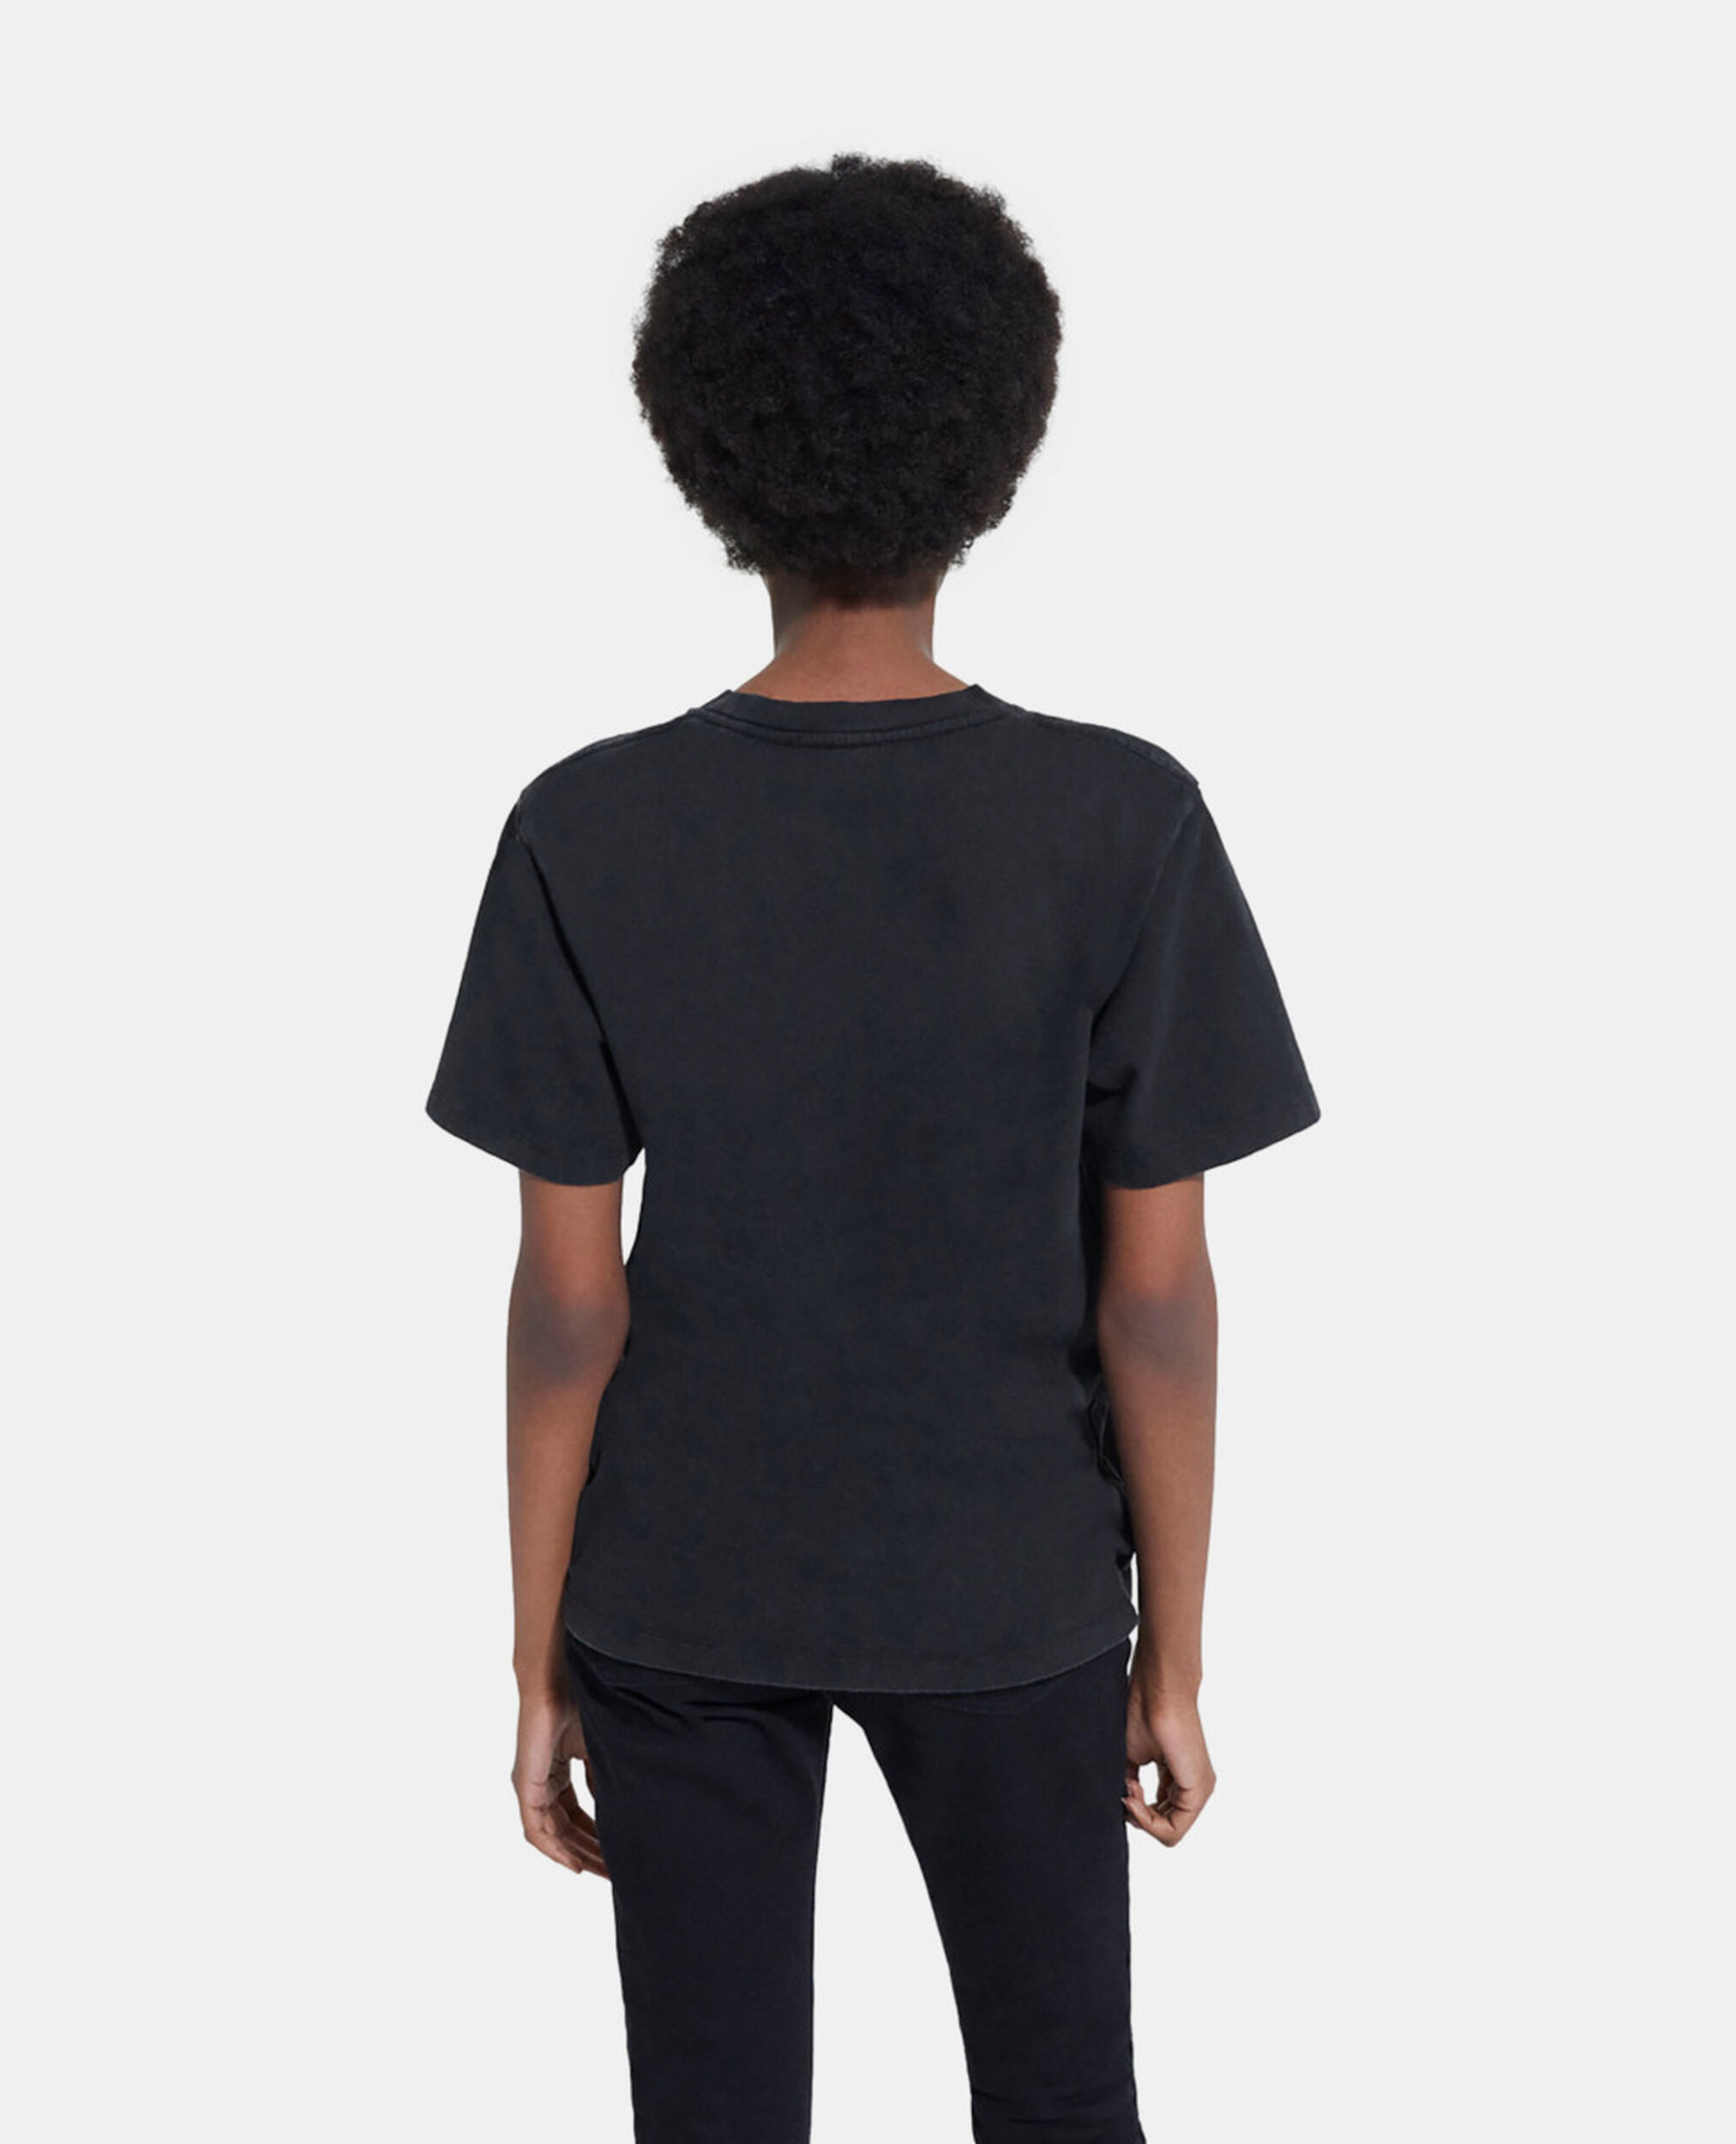 Camiseta serigrafiada negra, BLACK WASHED, hi-res image number null